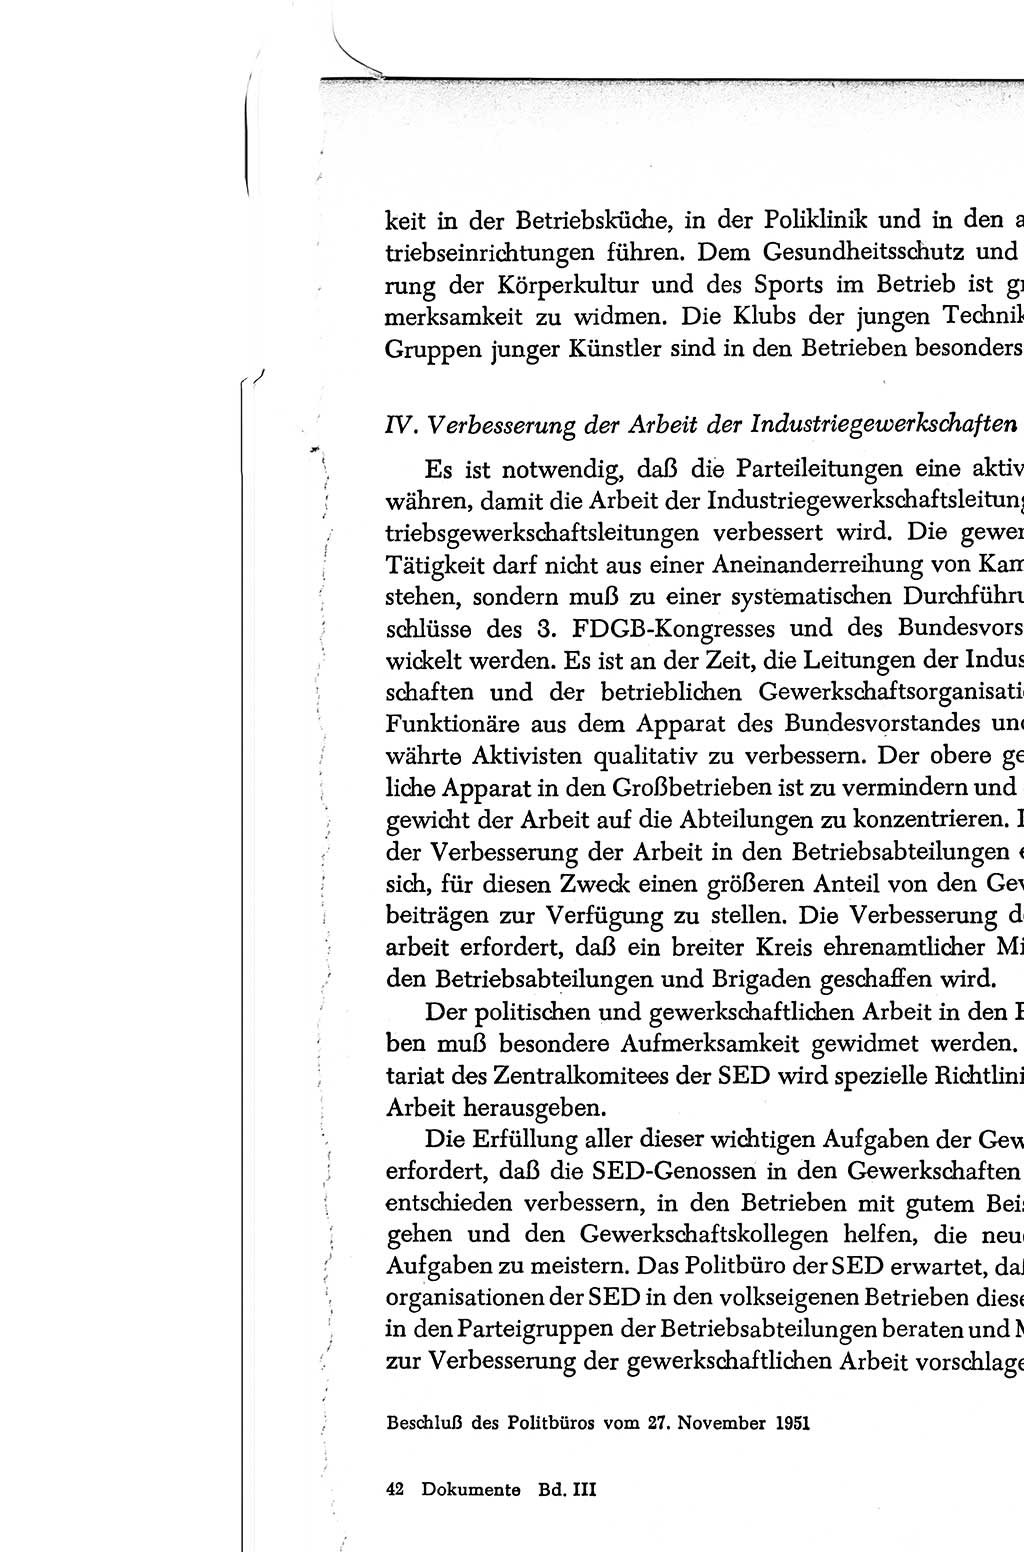 Dokumente der Sozialistischen Einheitspartei Deutschlands (SED) [Deutsche Demokratische Republik (DDR)] 1950-1952, Seite 657 (Dok. SED DDR 1950-1952, S. 657)